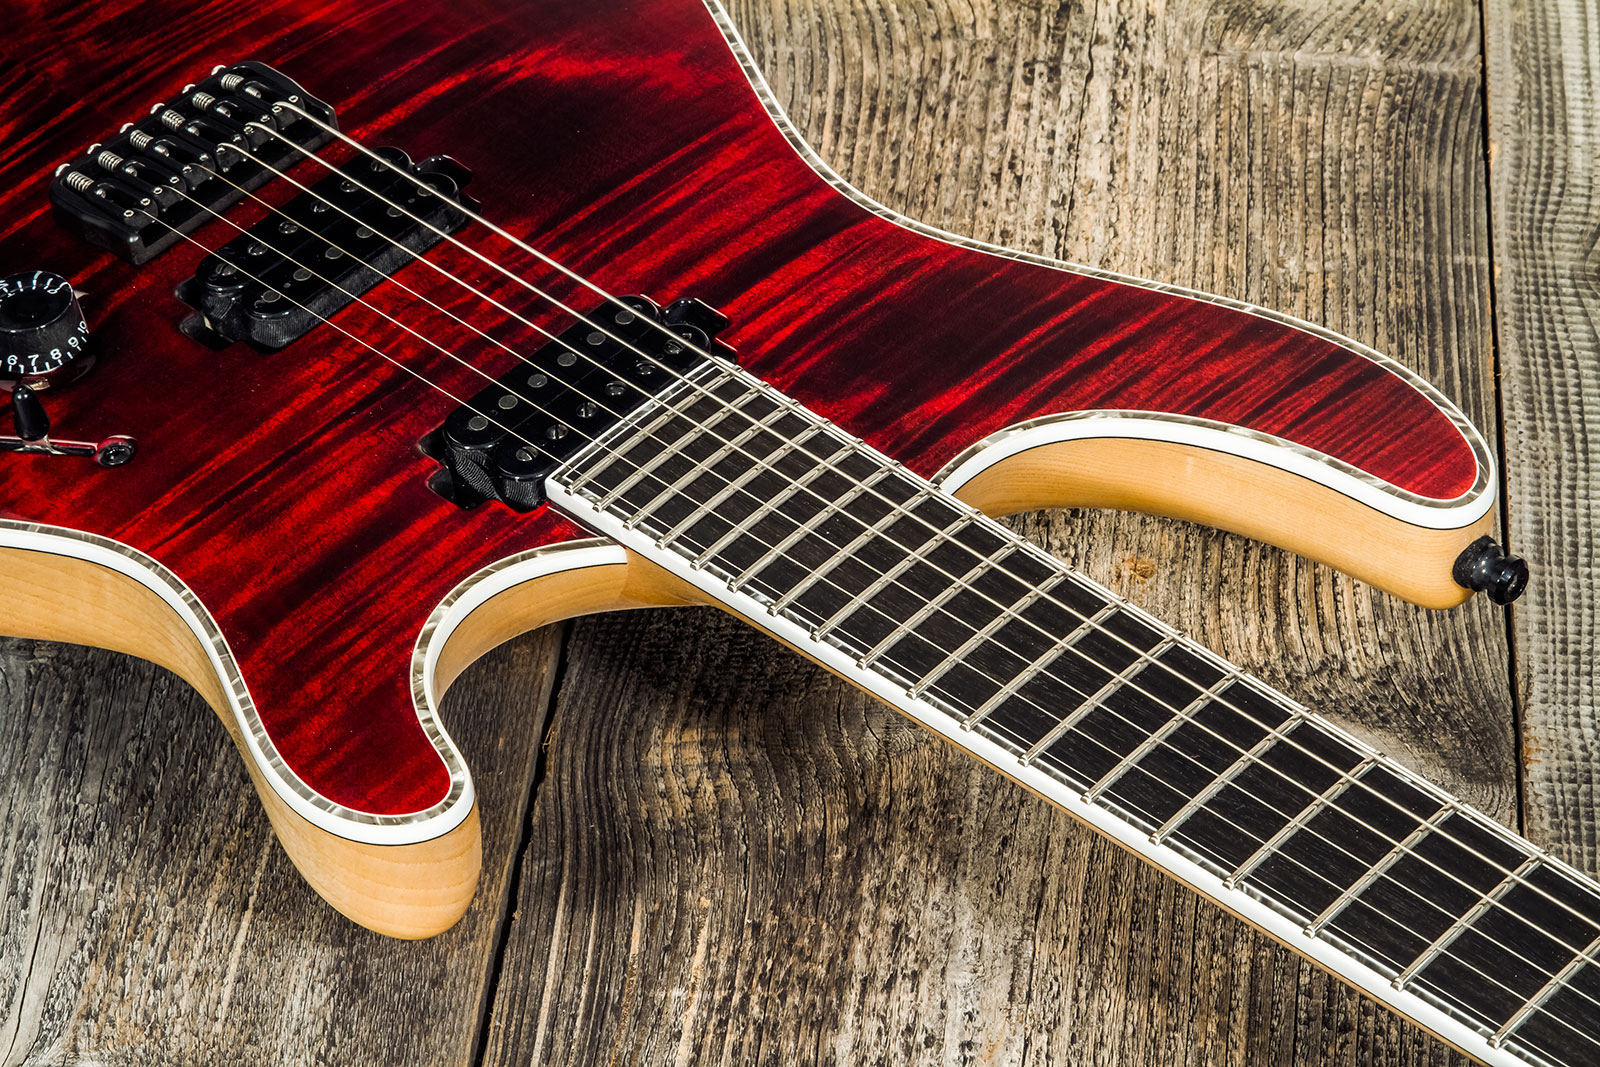 Mayones Guitars Regius 6 Ash 2h Tko Ht Eb #rf2203440 - Dirty Red Burst - Guitarra eléctrica con forma de str. - Variation 3